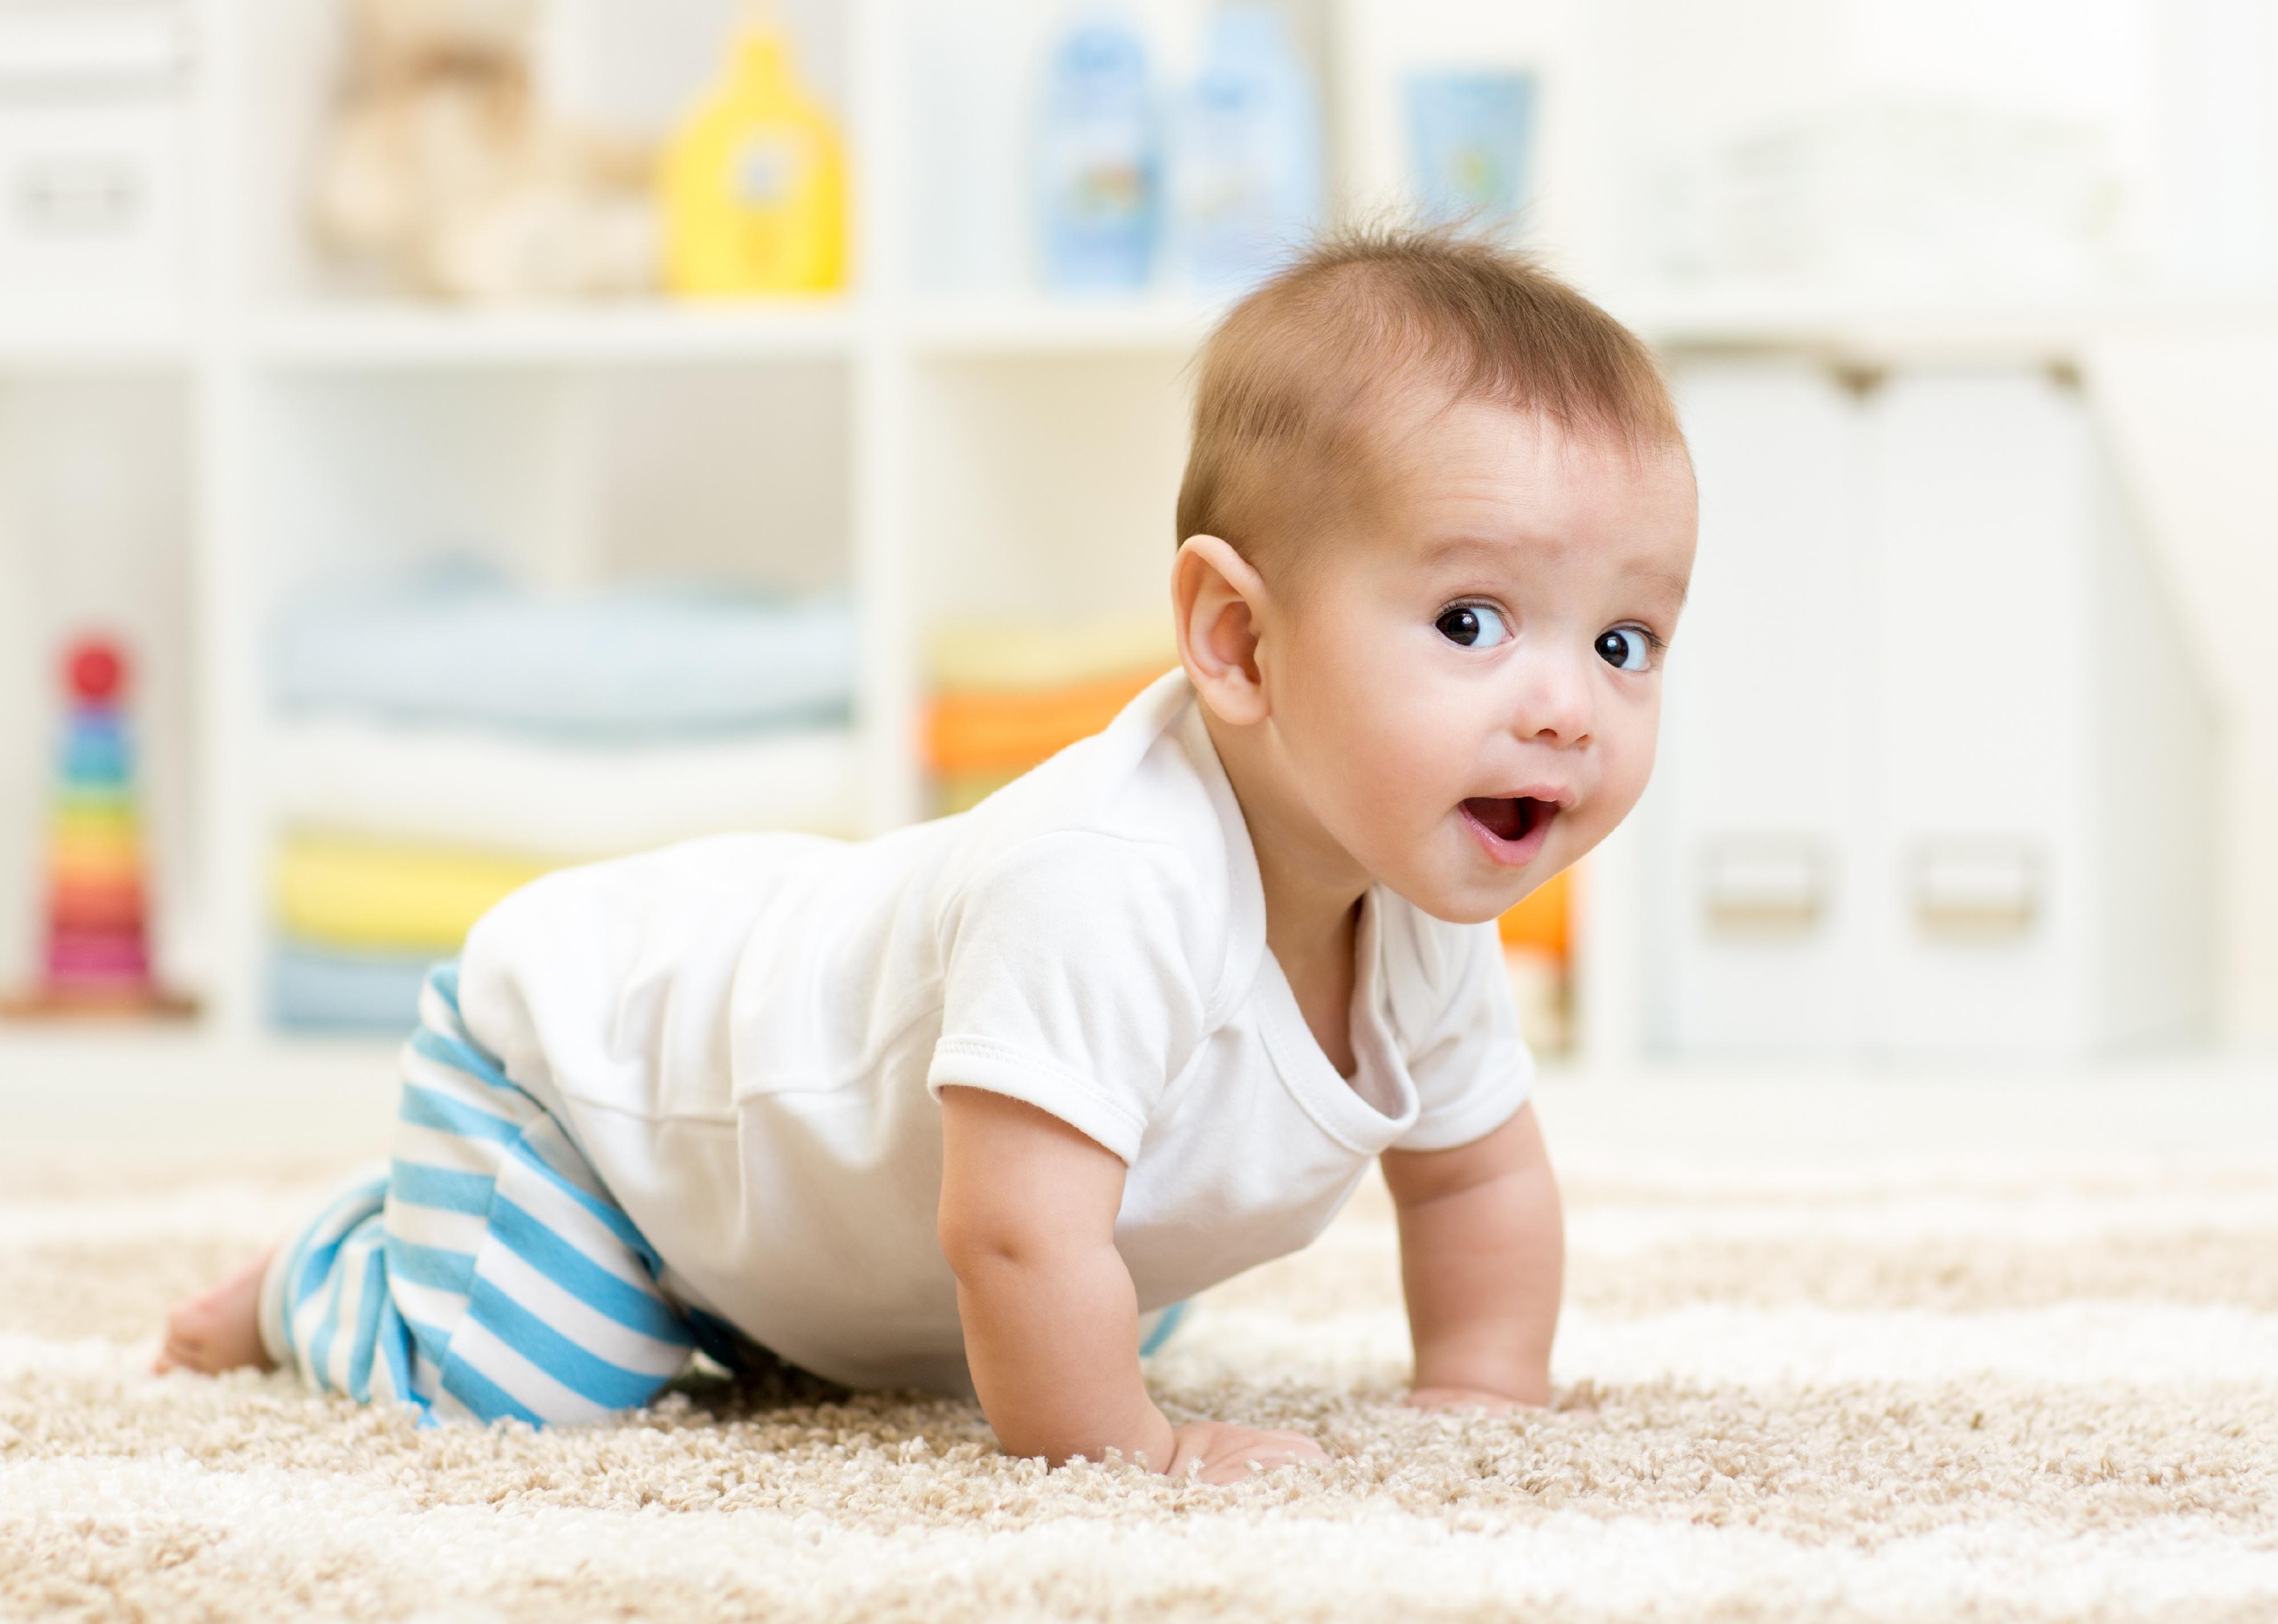 Baby crawling on white carpet.